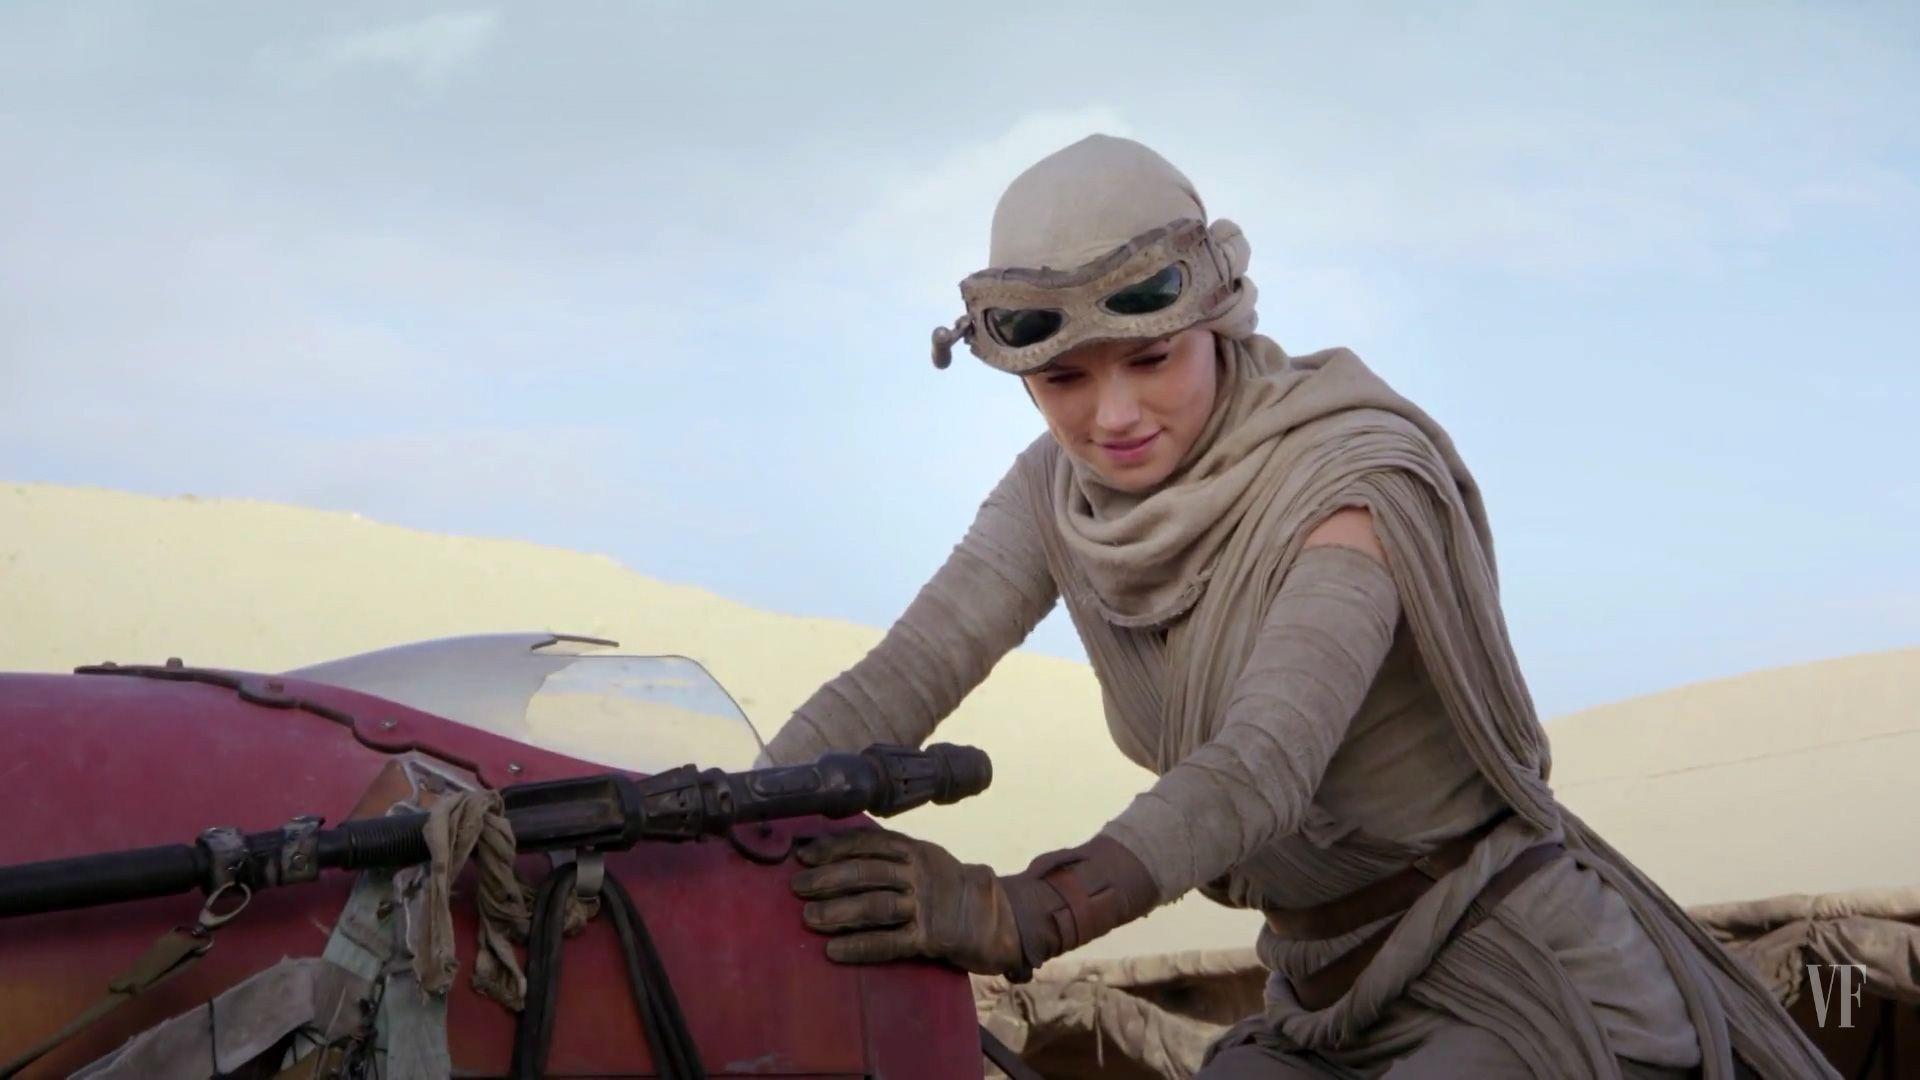 Rey riding her Speeder Wars 7: The Force Awakens